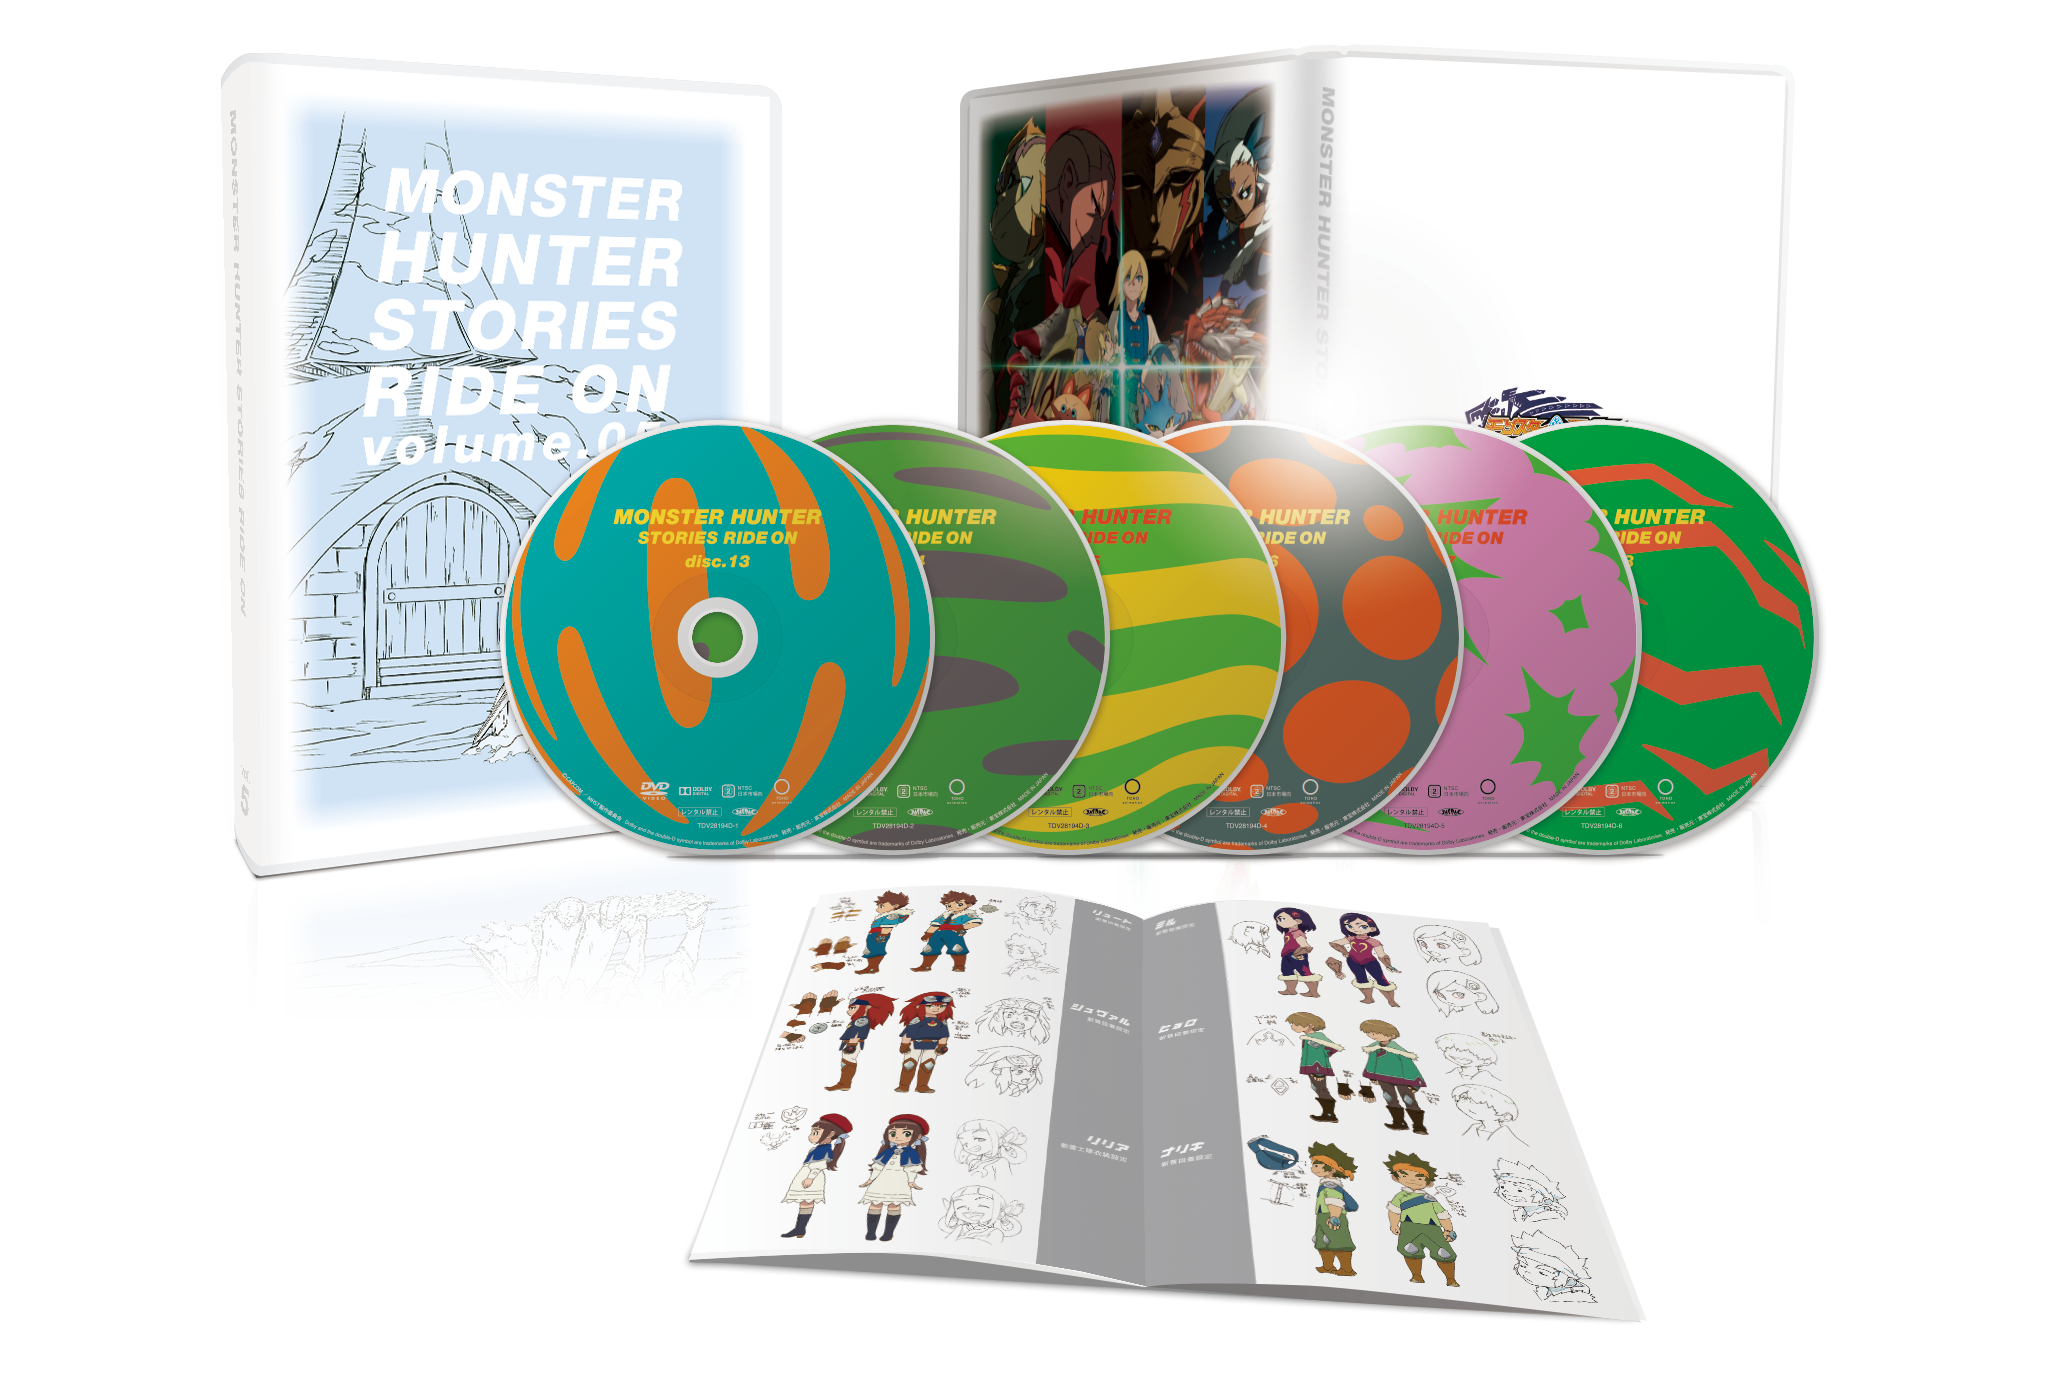 モンスターハンター ストーリーズ RIDE ON Blu-ray BOX Vol.5